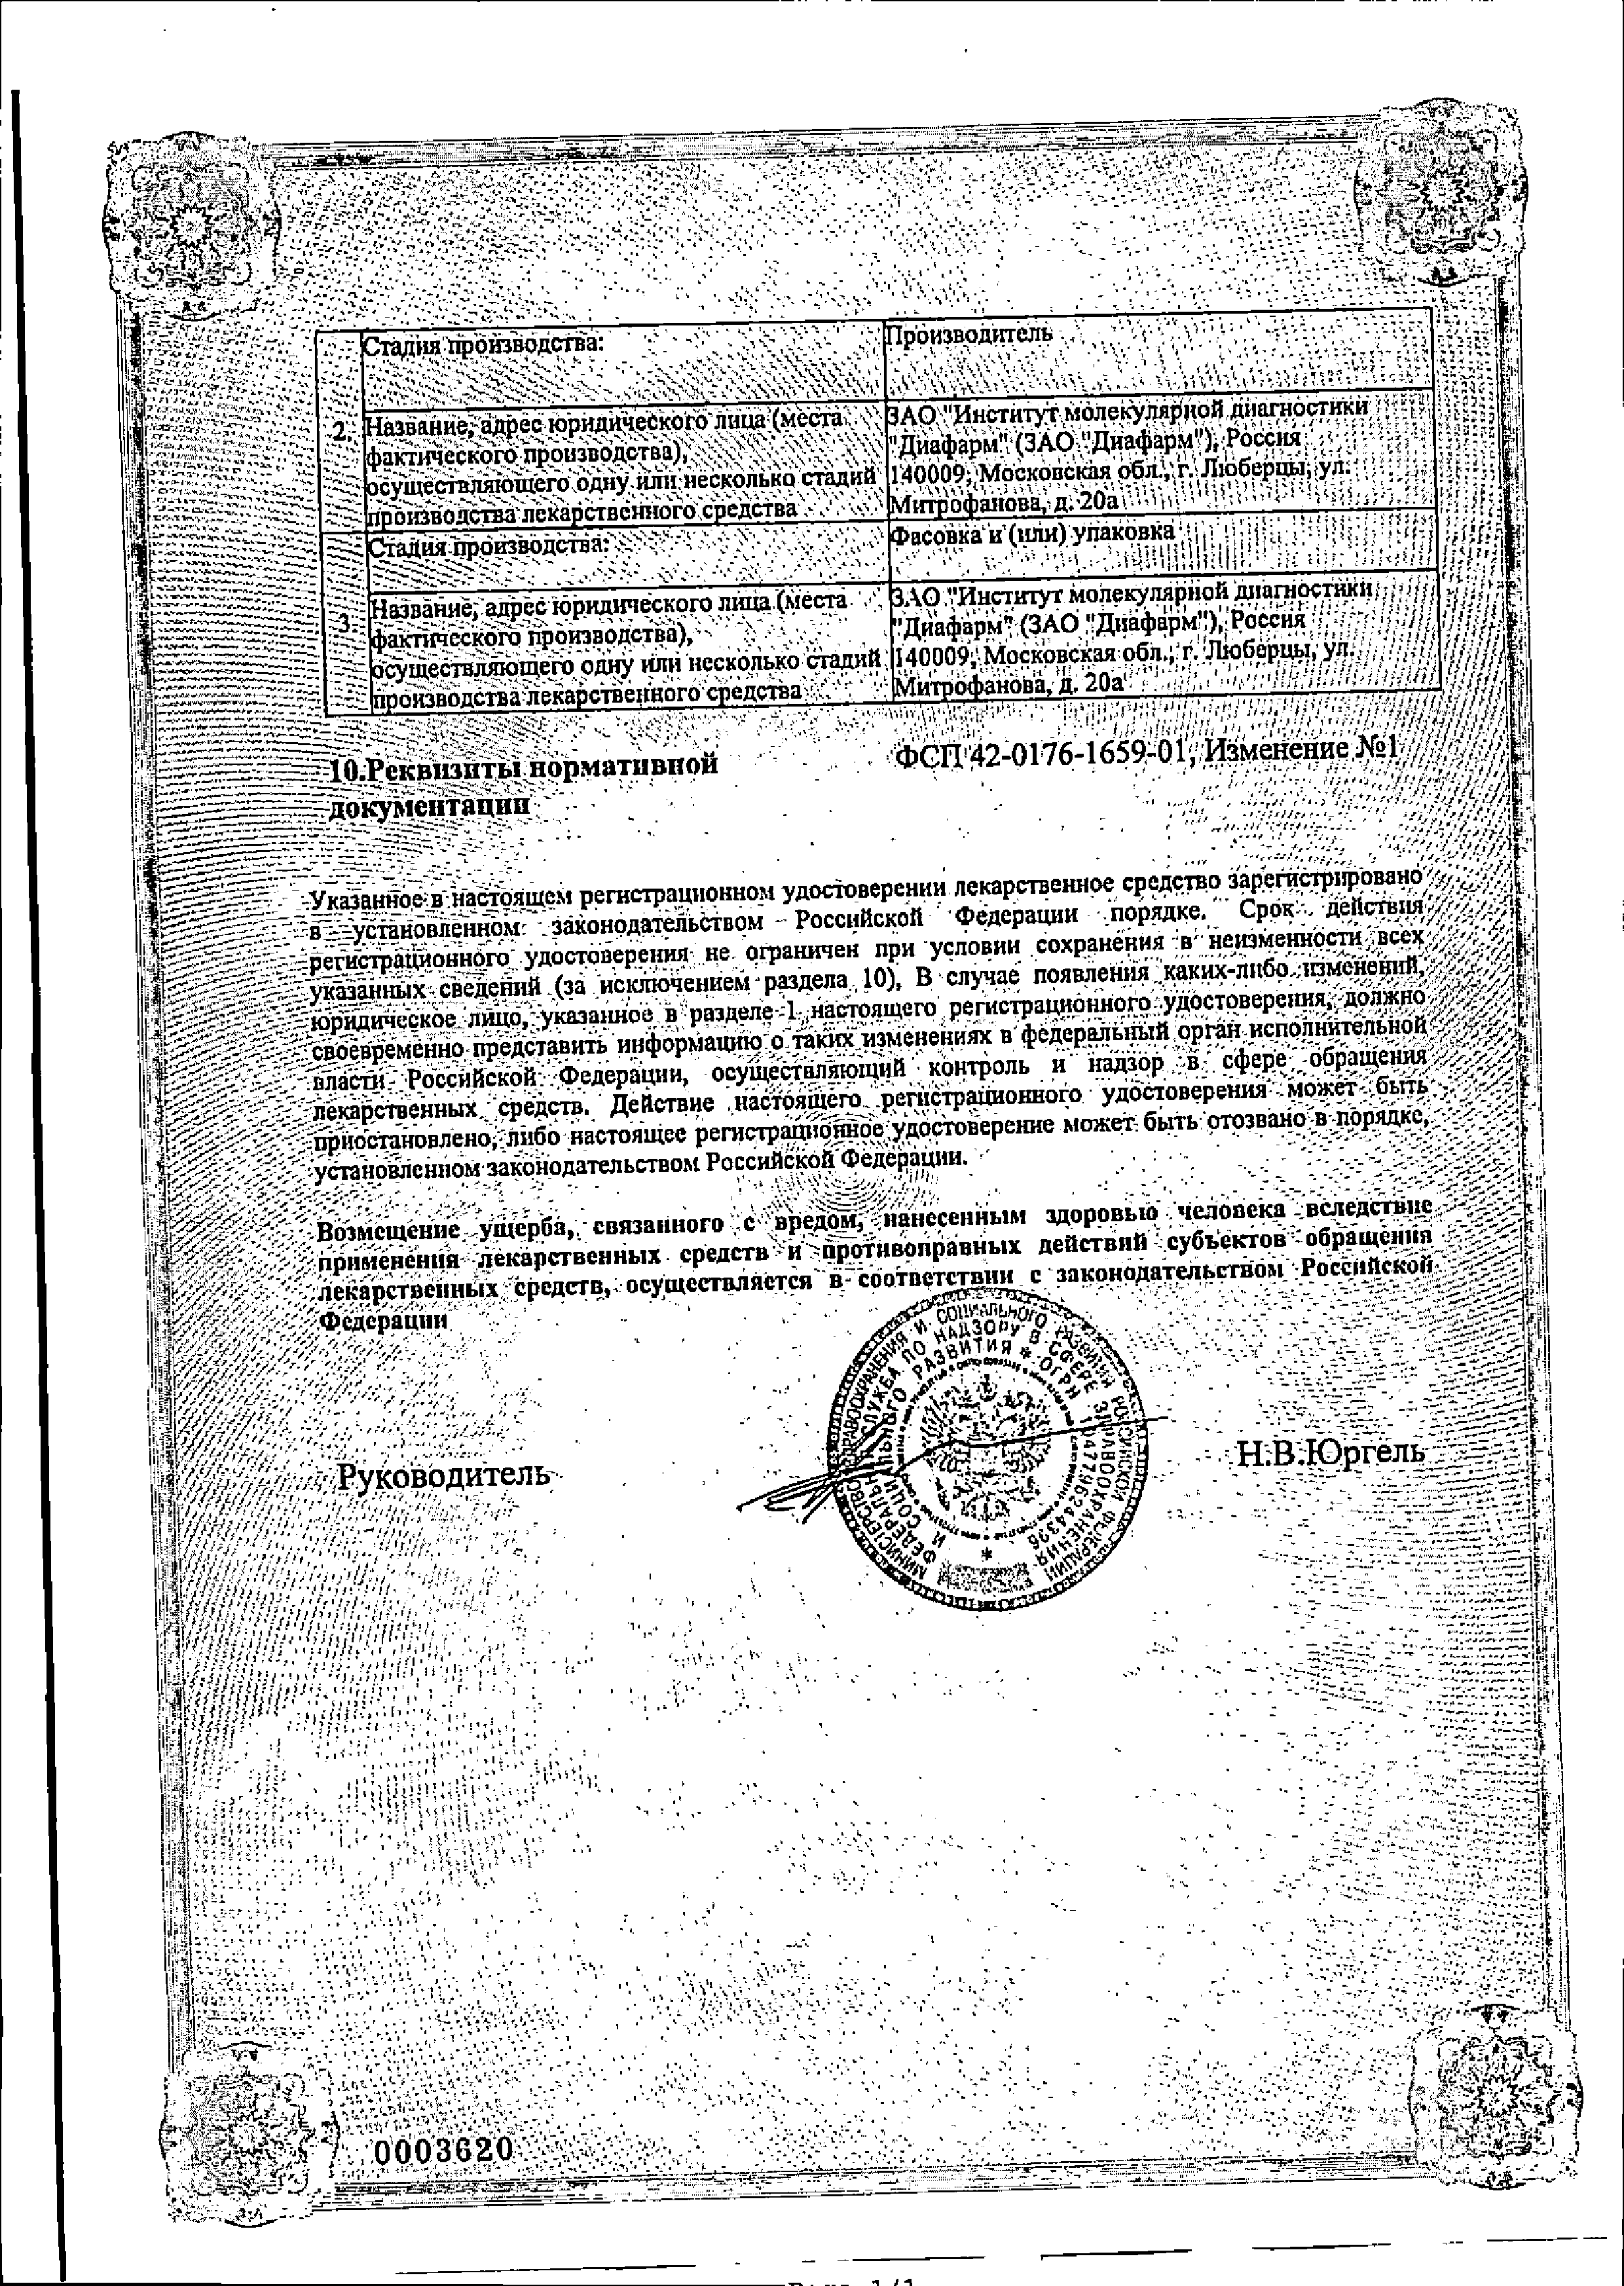 Сульфацил натрия-ДИА сертификат